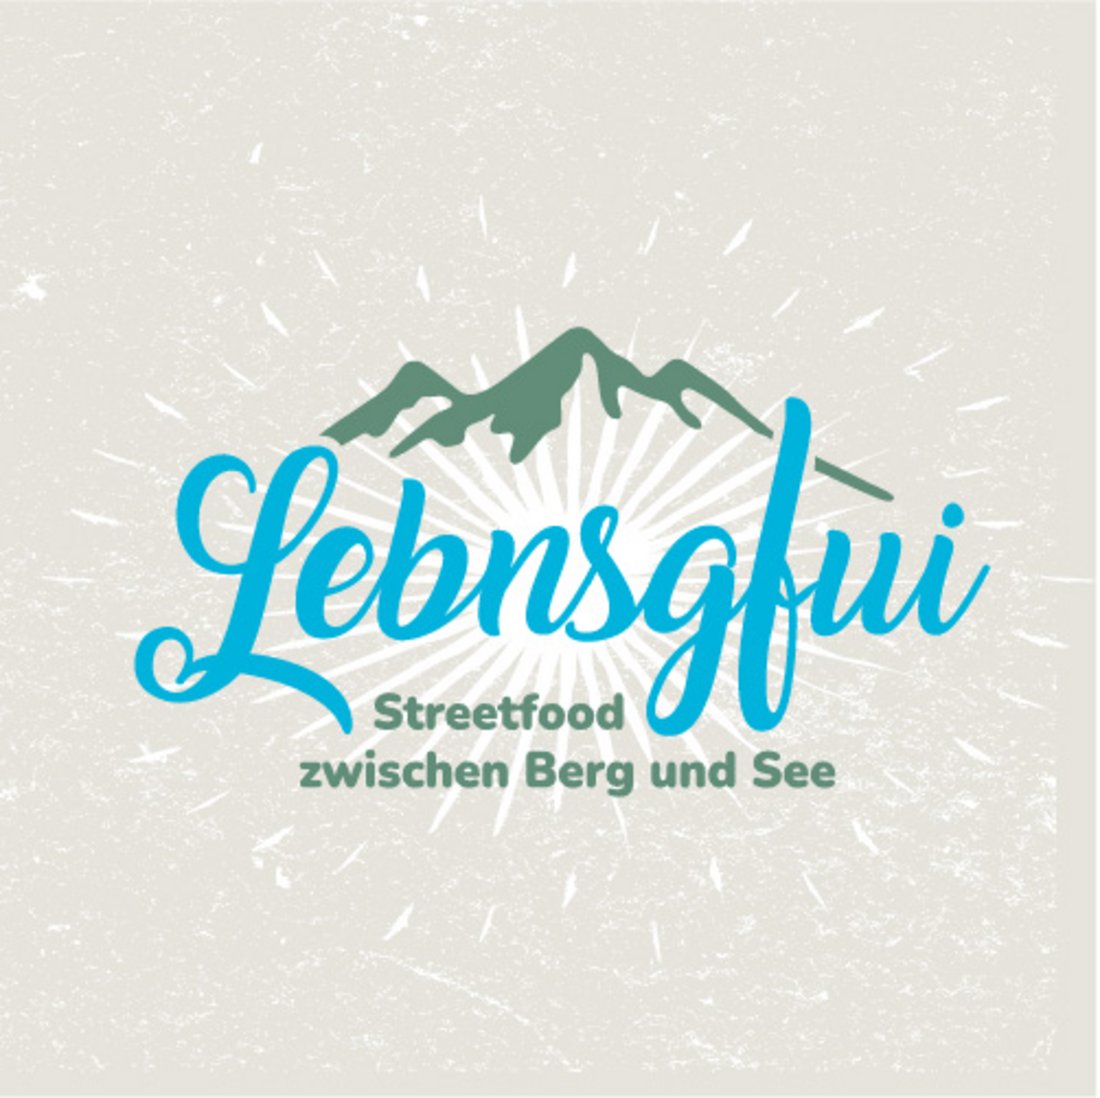 Lebnsgfui Streetfood zwischen Berg und See